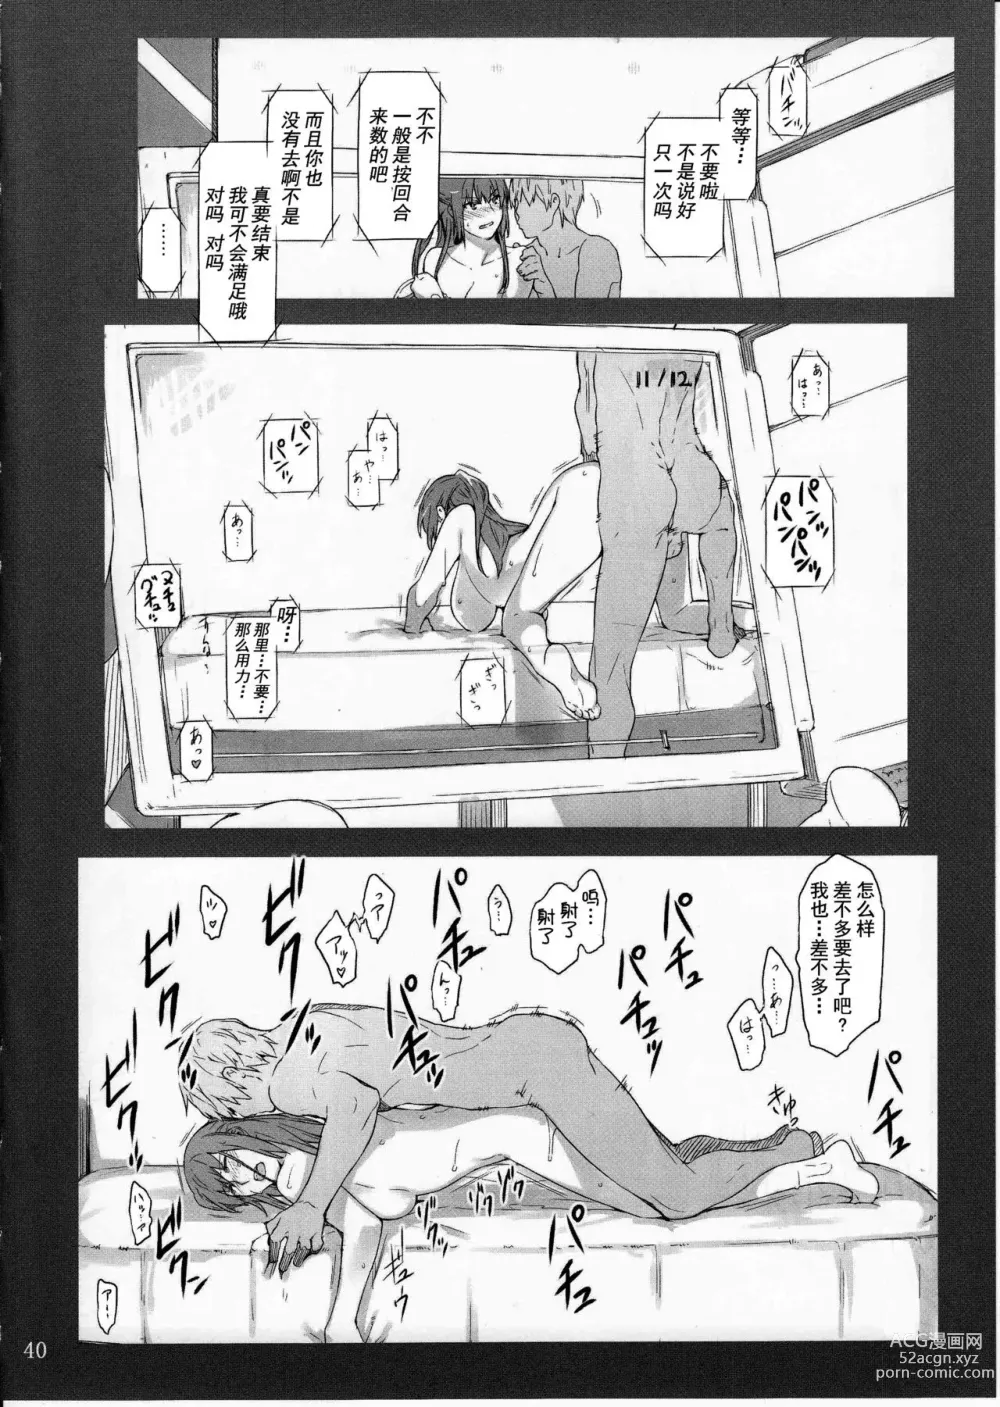 Page 39 of doujinshi 橘さん家ノ男性事情小説版挿絵